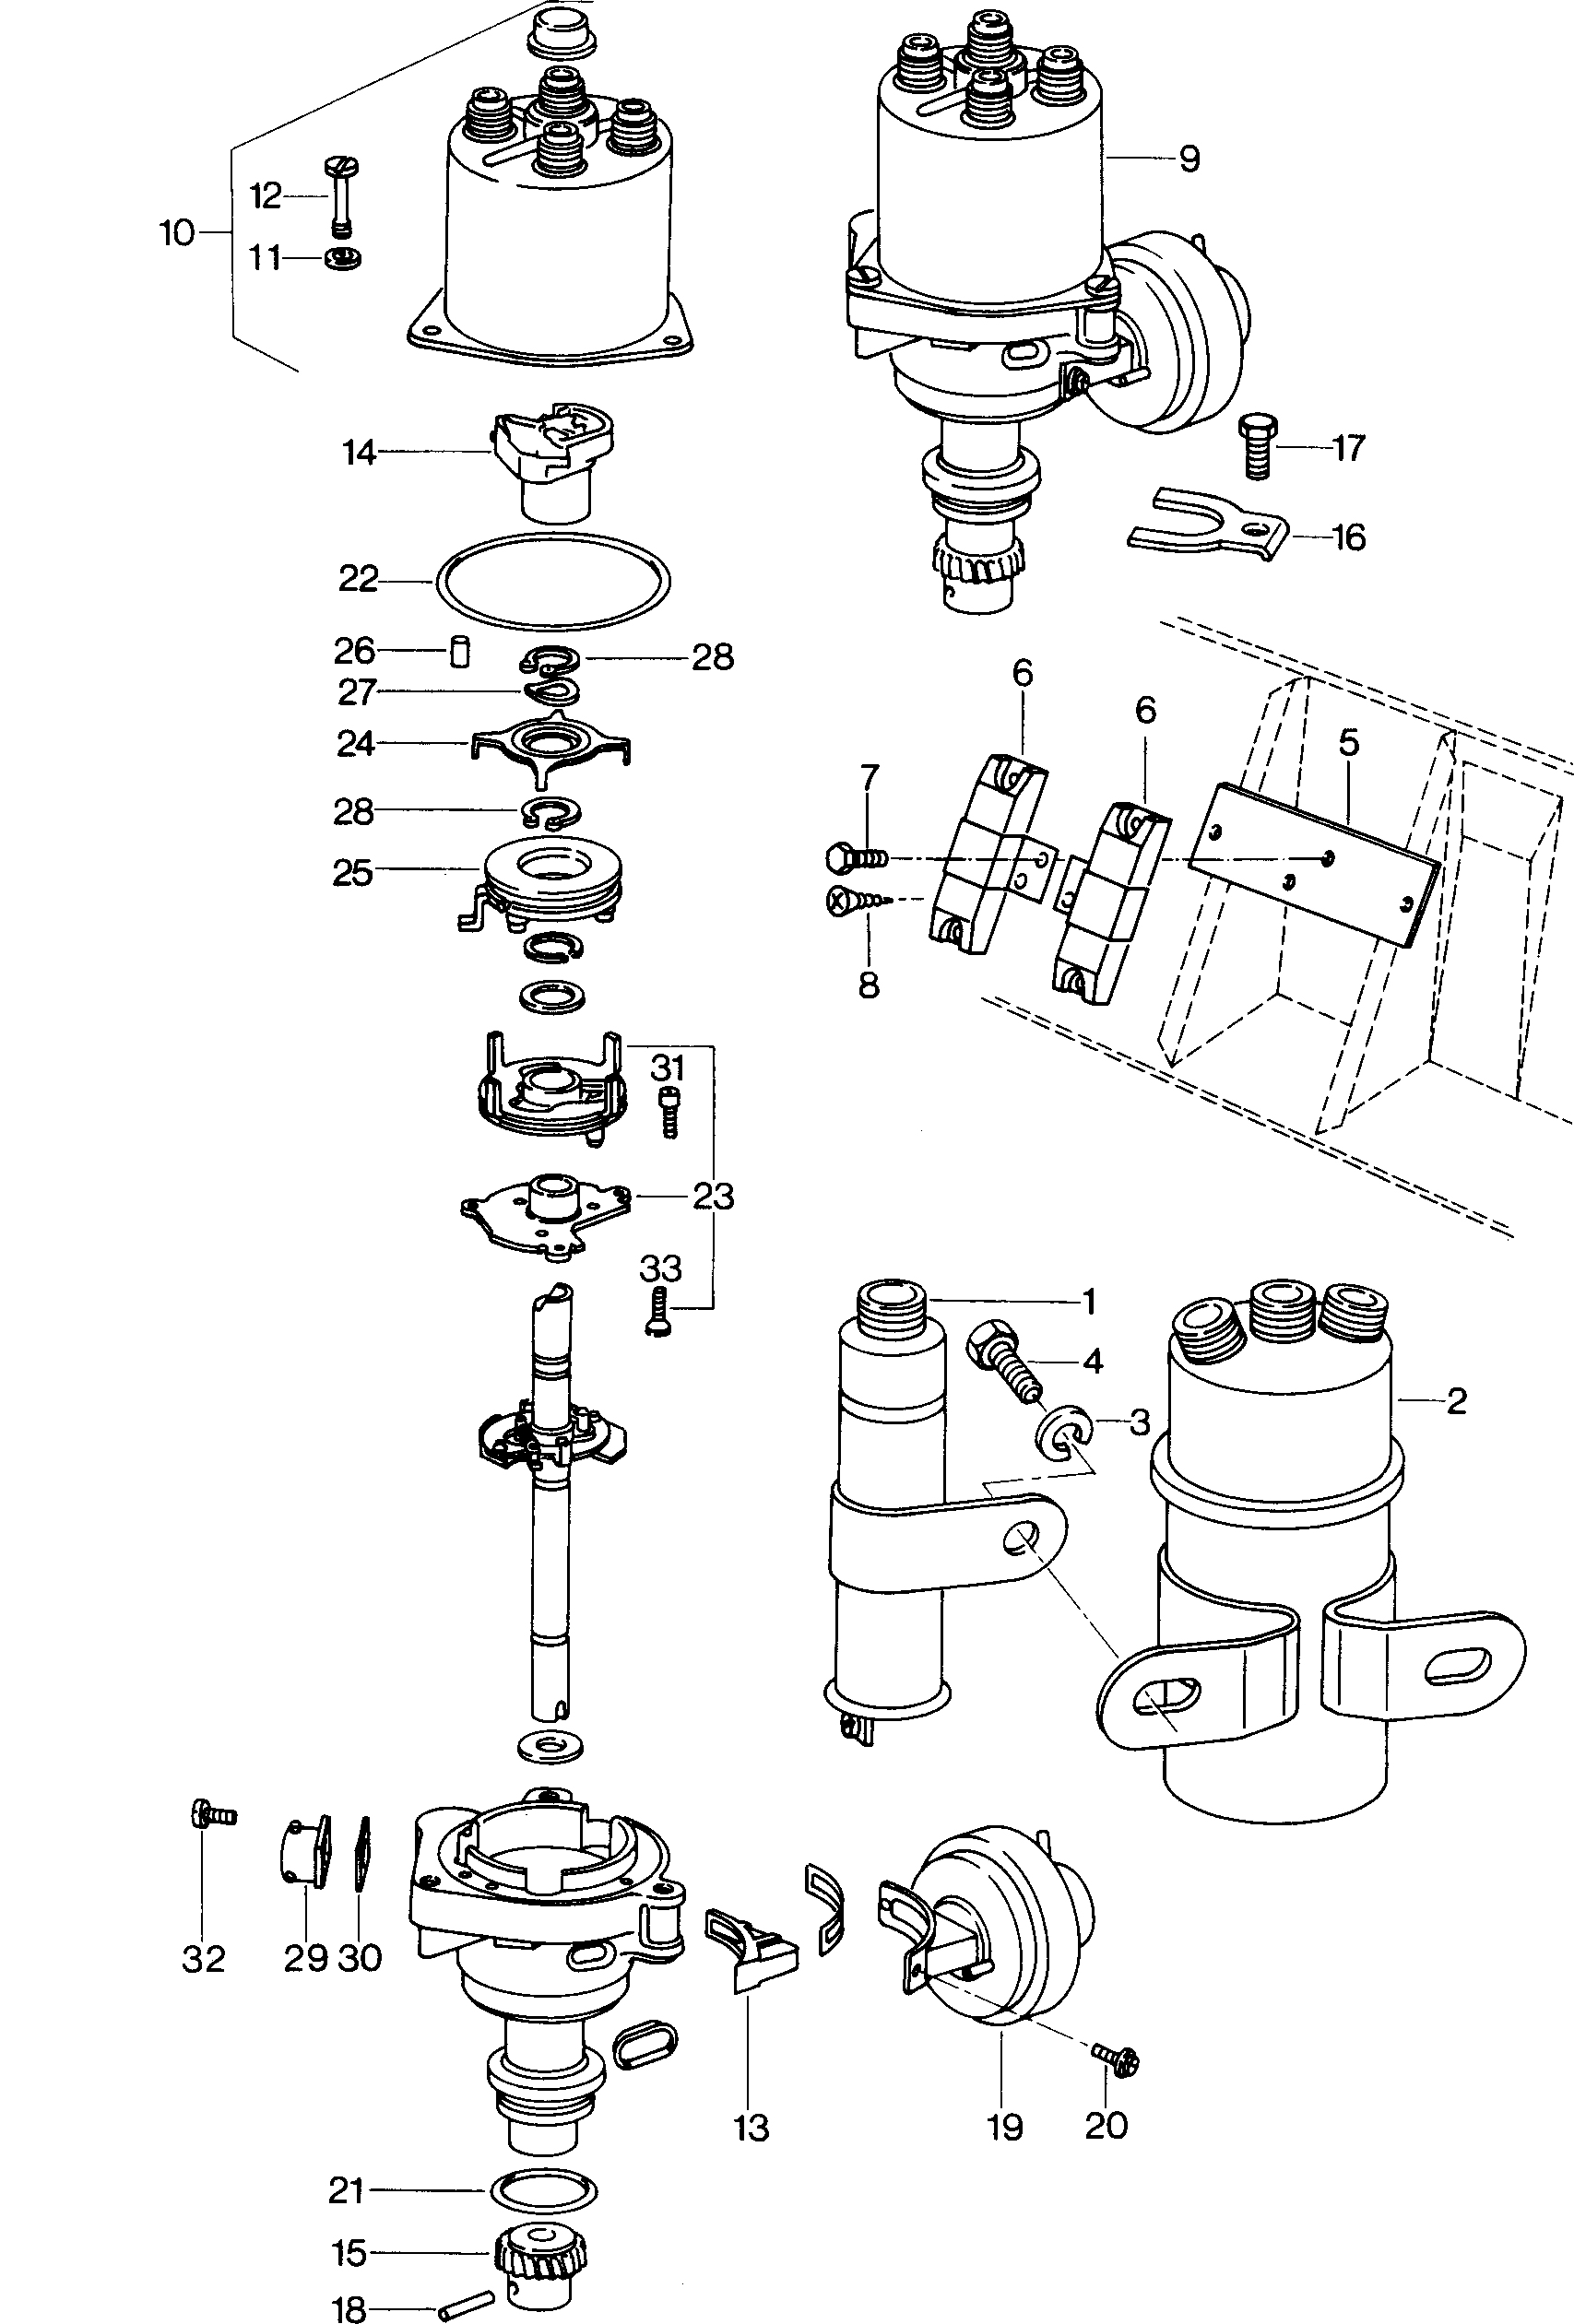 Ateşleme bobini; Distribütör - Mod.181 / Iltis(ILT)  